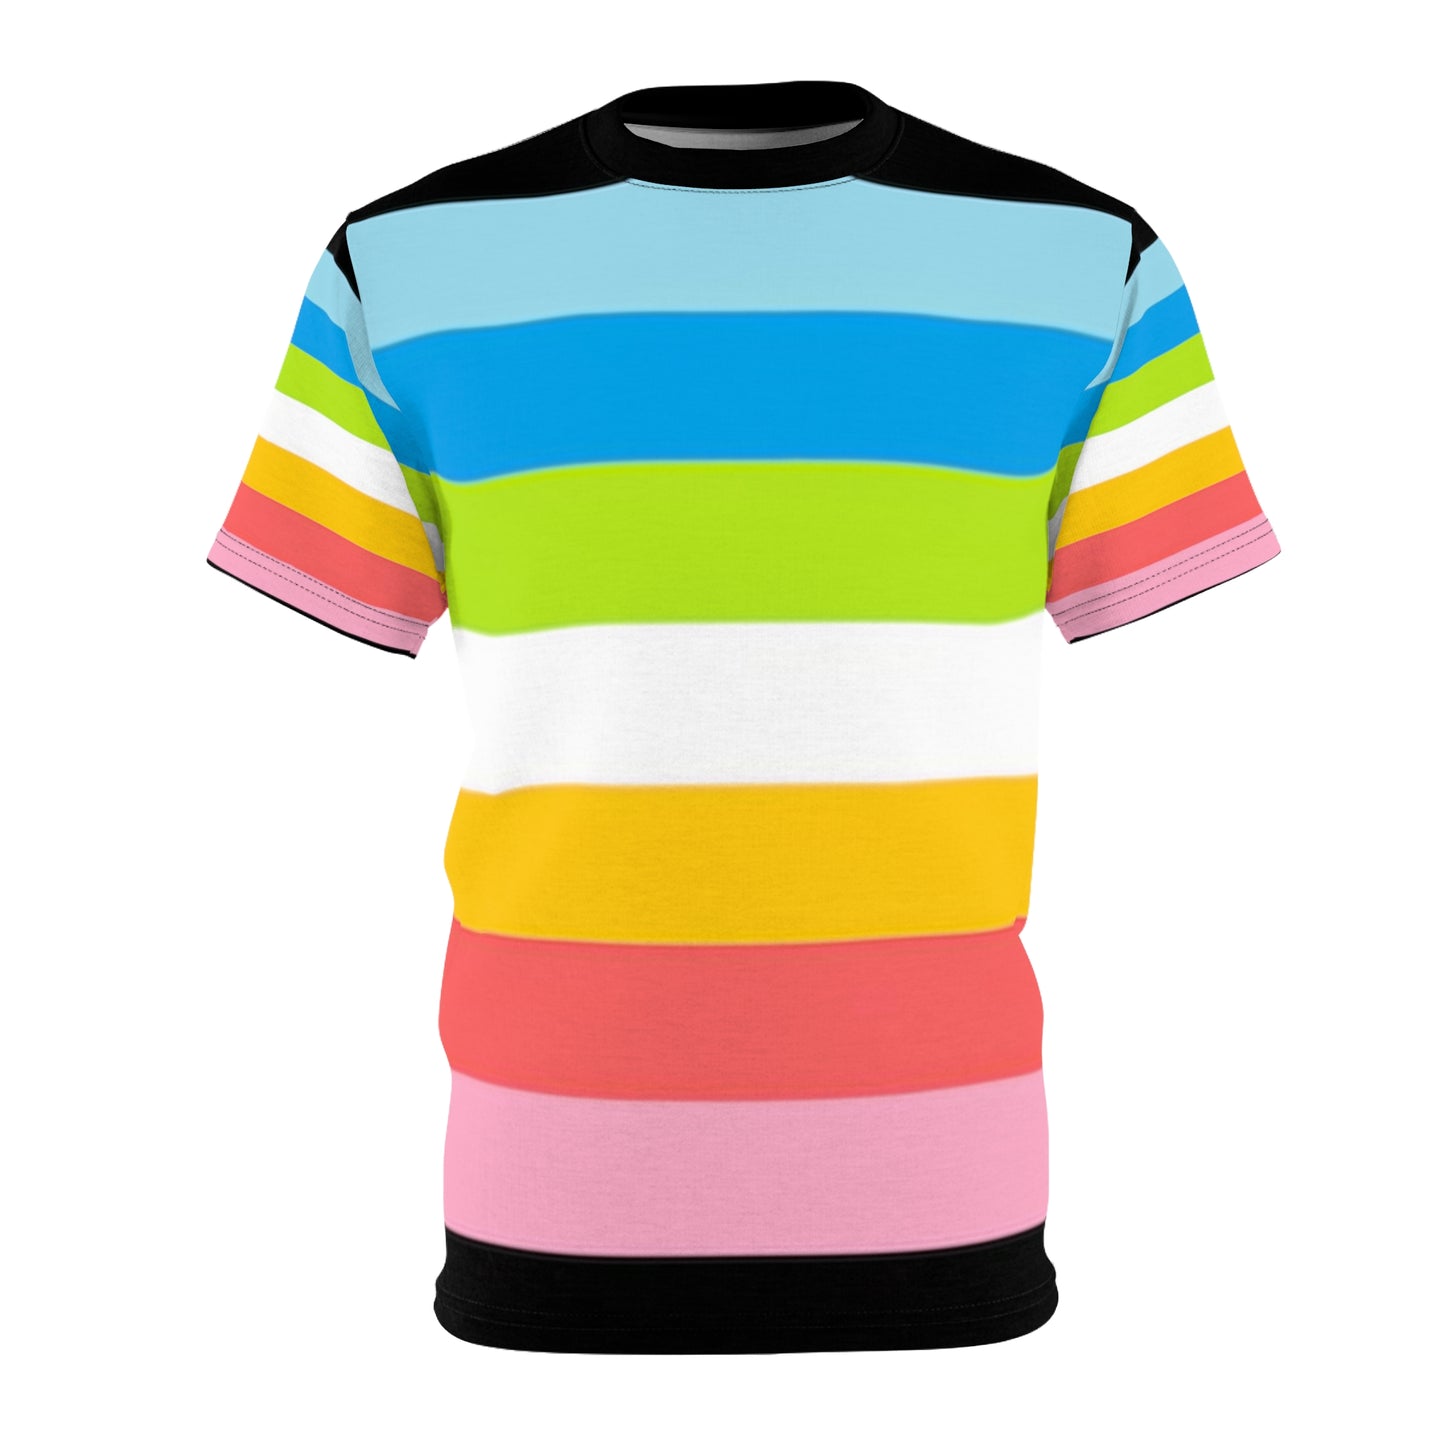 Queer Pride Unisex T-Shirt